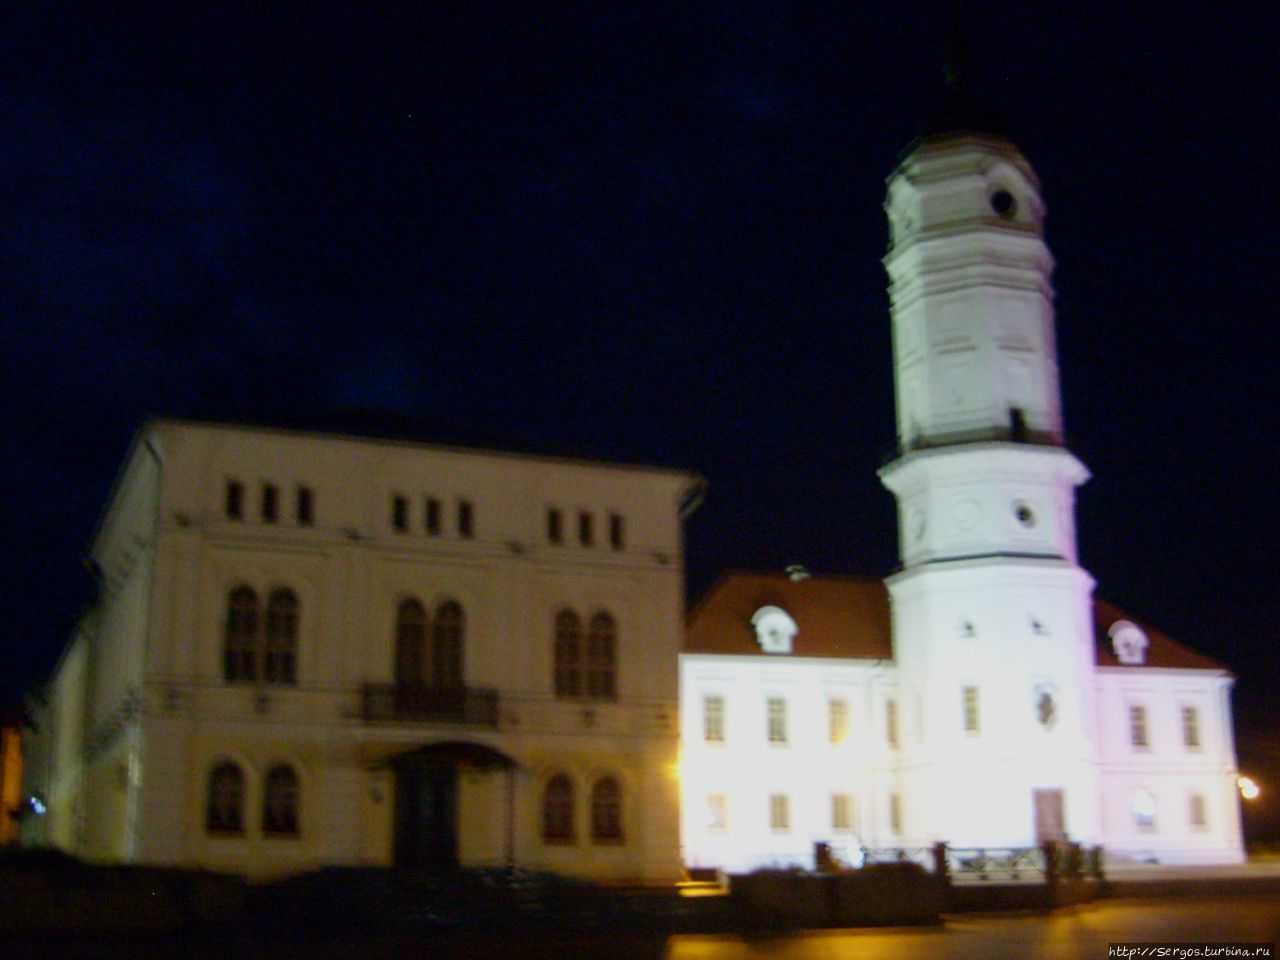 восстановленная в 2008году по старинным чертежам городская ратуша в Могилёве Беларусь